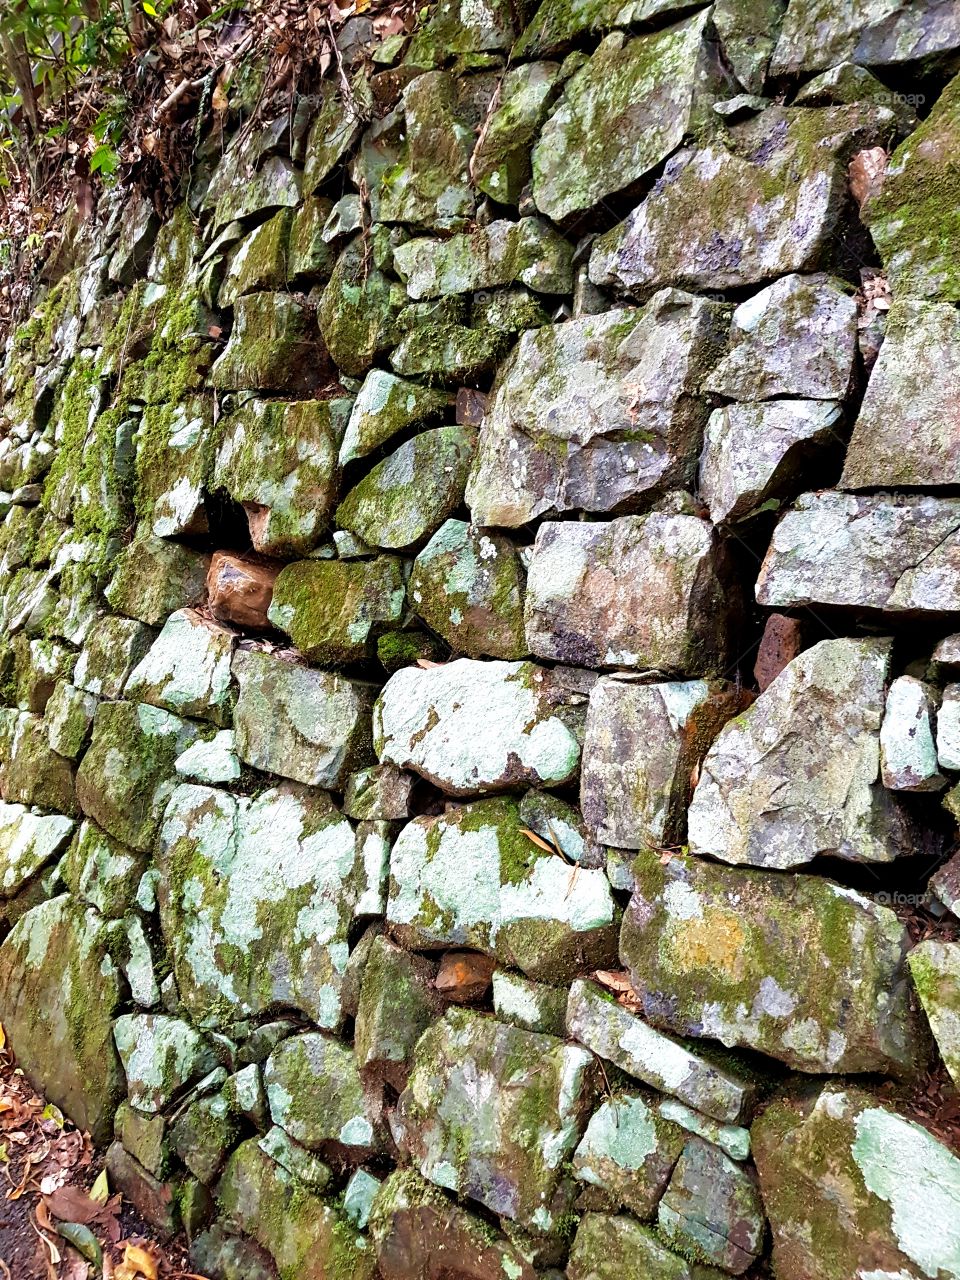 Mossy rock wall